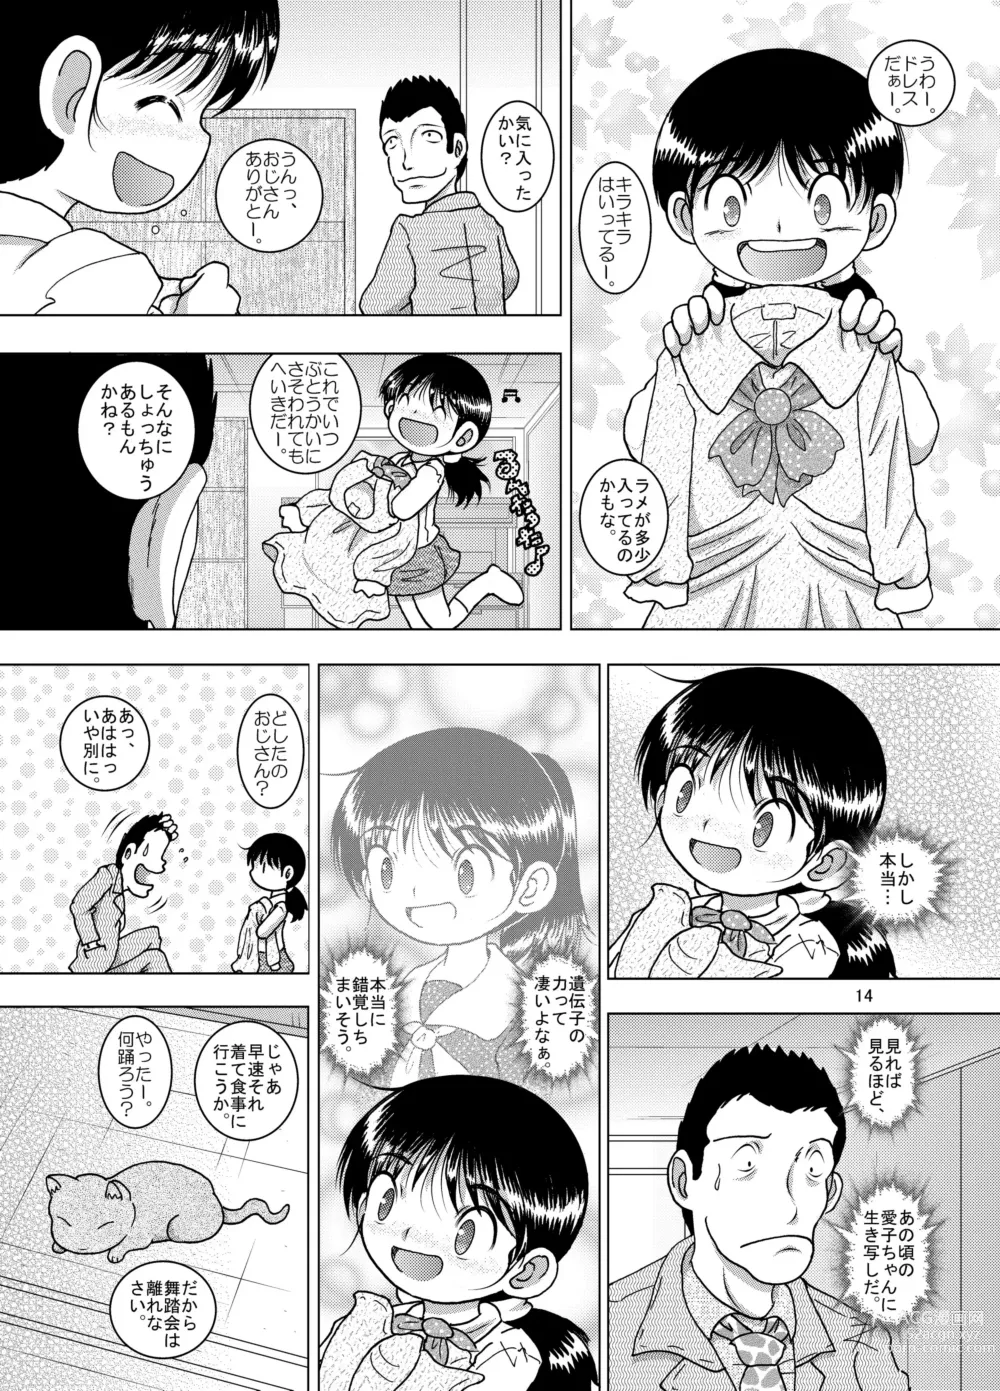 Page 14 of doujinshi Hoen Yokan